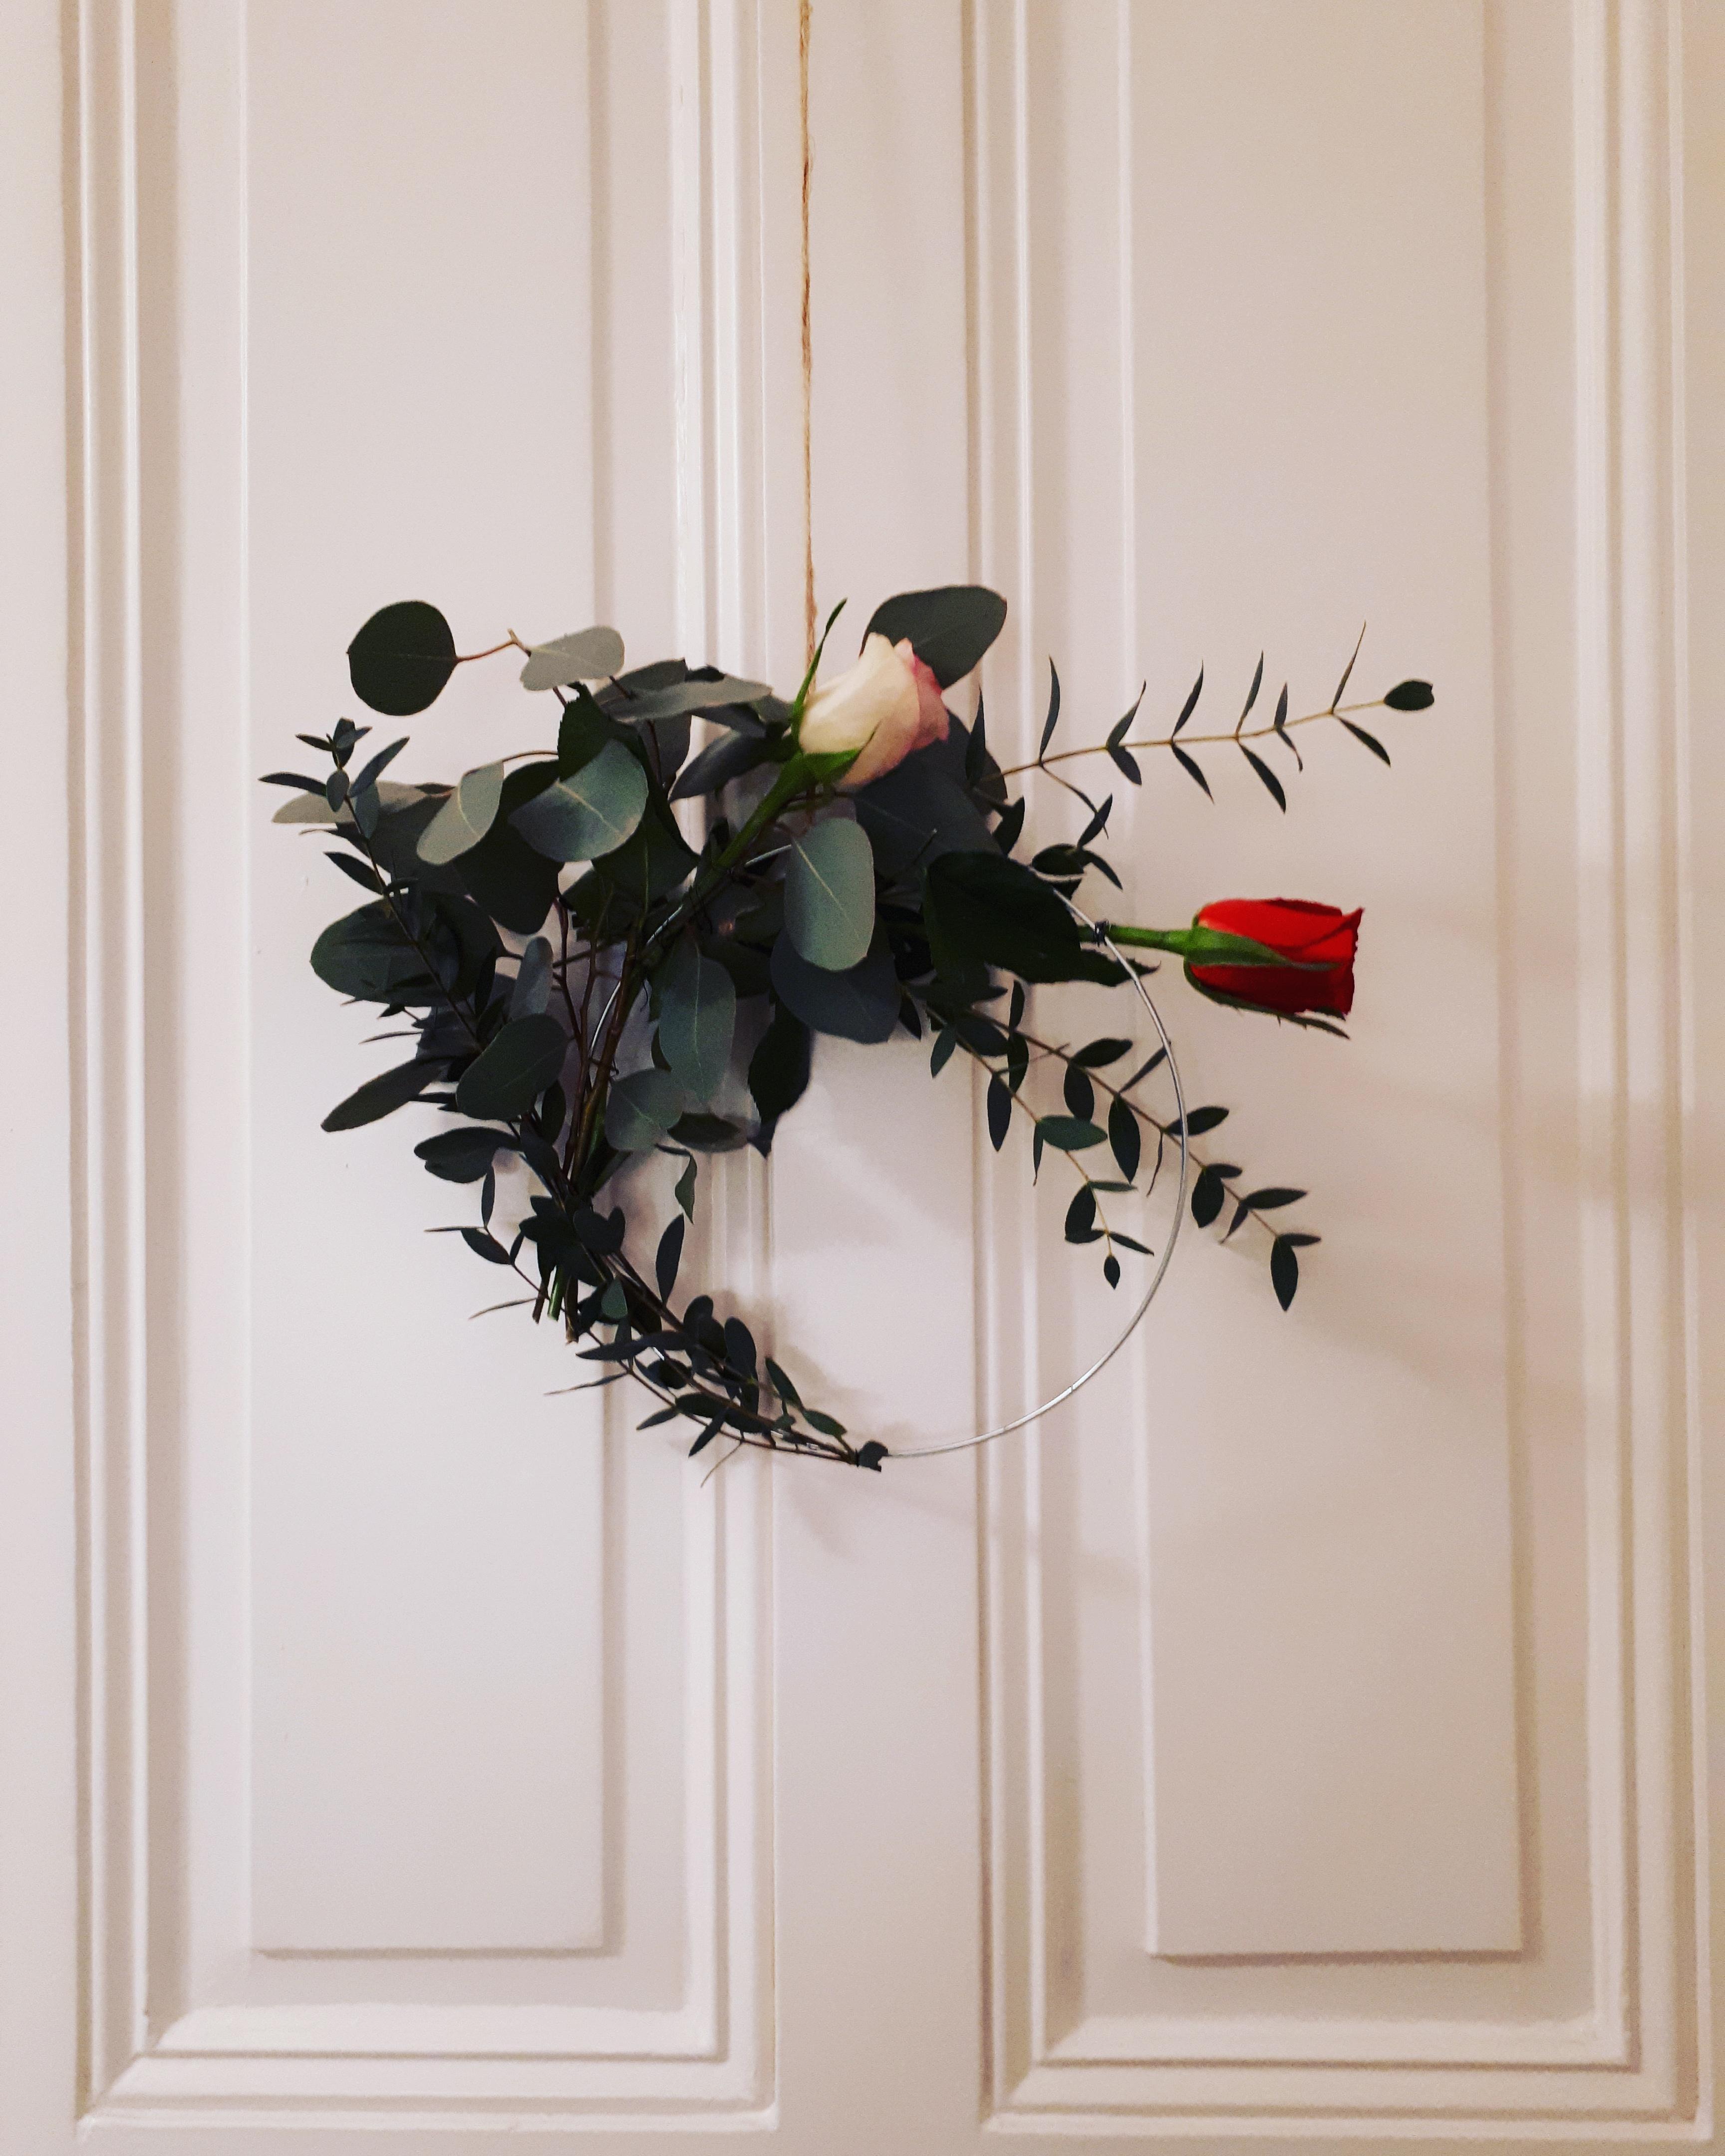 Kreative Blumenliebe 💐
.
#kranz #blumenkranz #tür #altbau #eukalyptus #rose